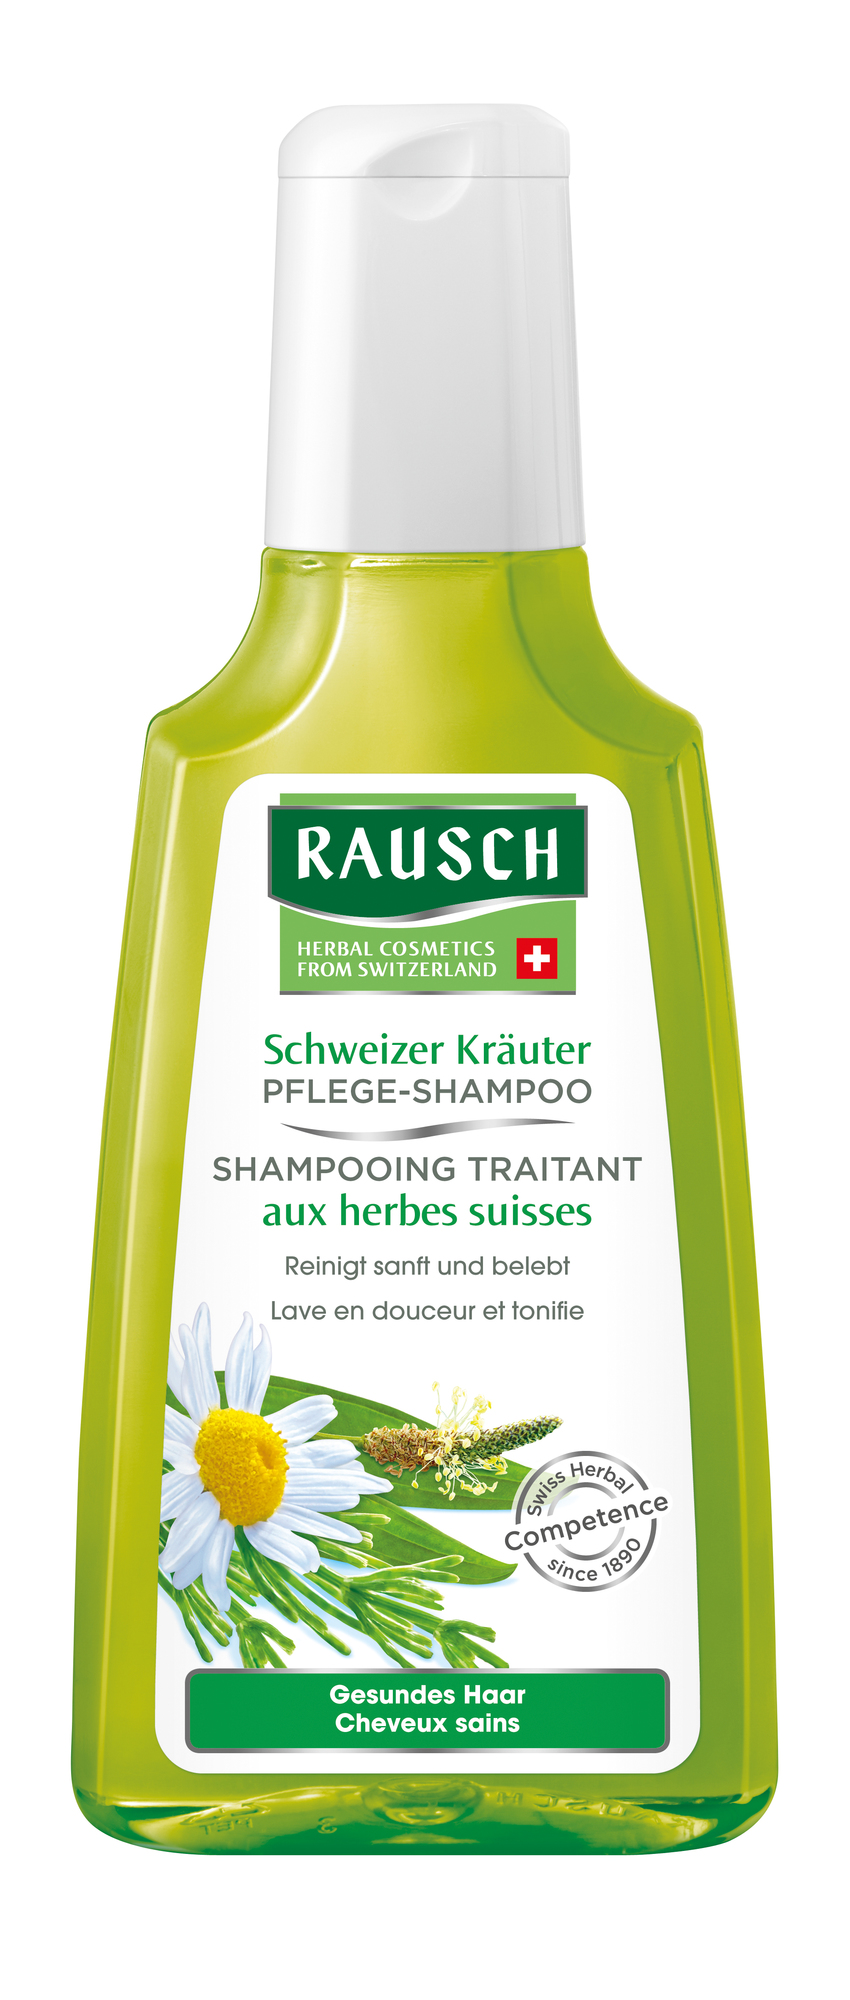 RAUSCH Schweizer Kräuter Pflege-Shampoo 200ml